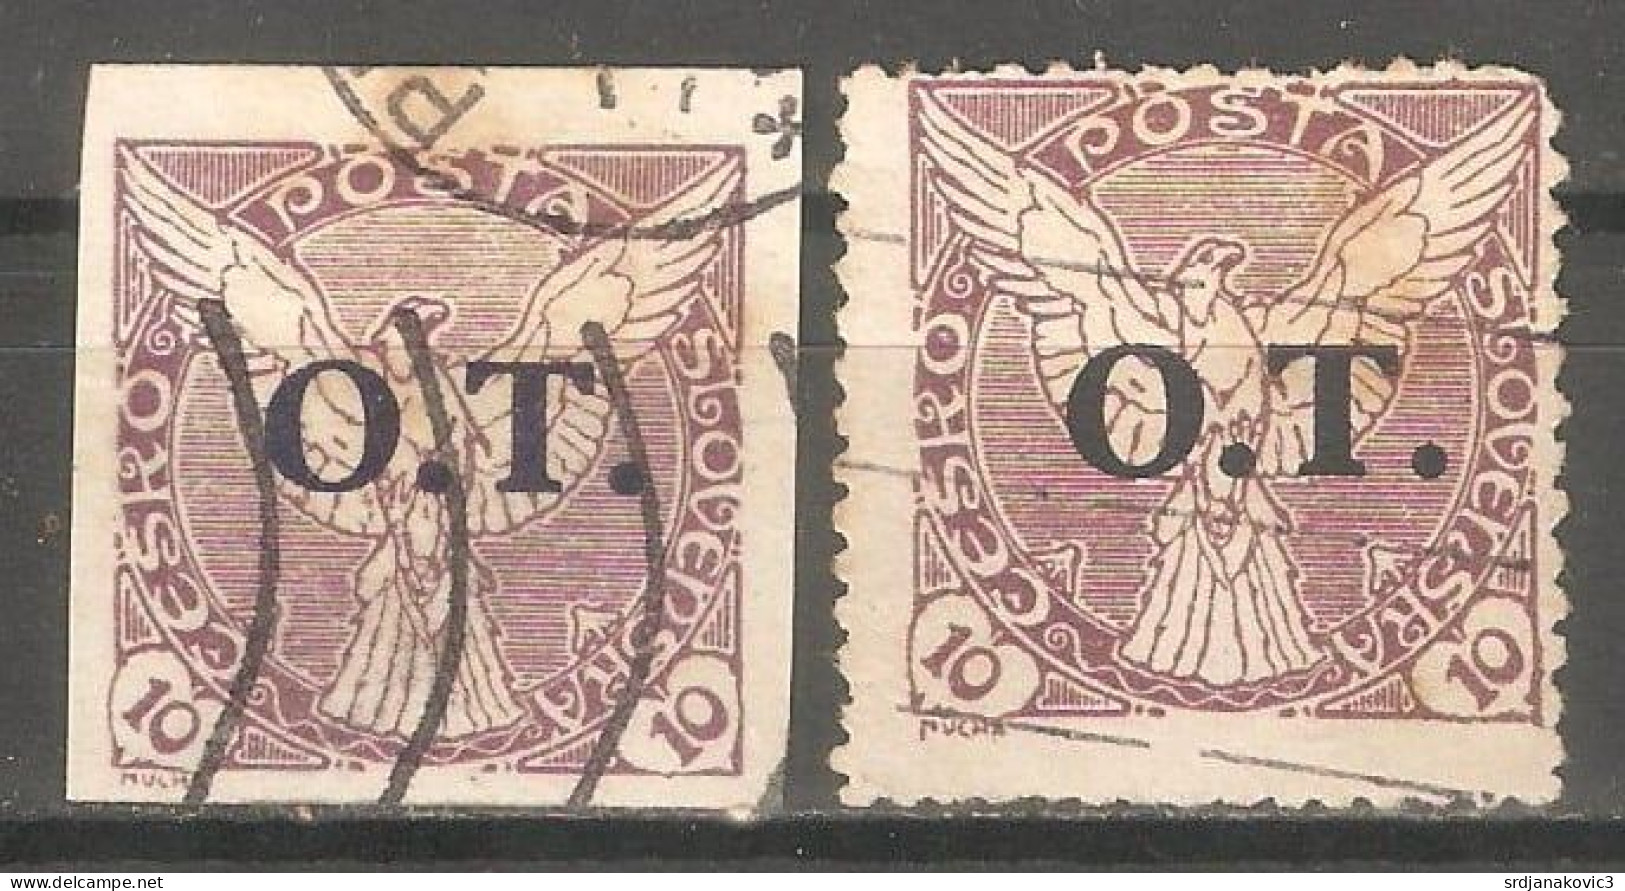 Ceskoslovensko - Unused Stamps